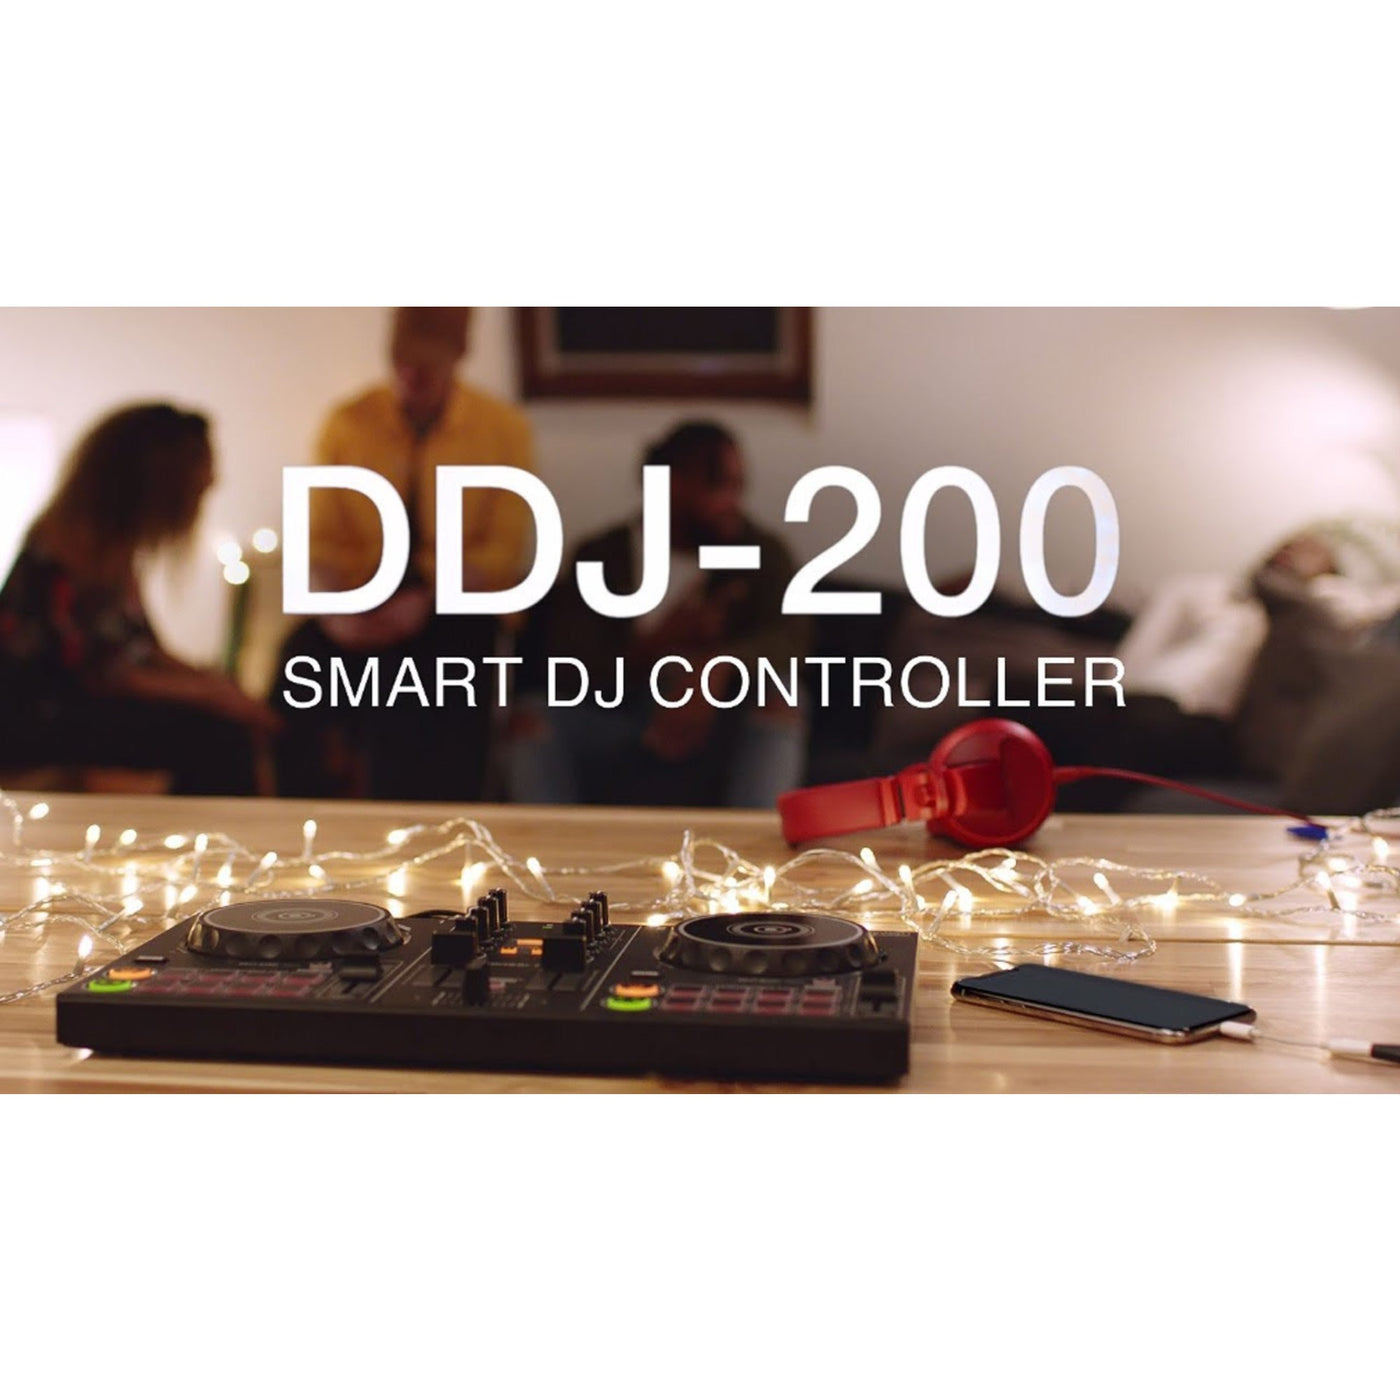 Pioneer DJ DDJ-200 2-Channel Smart DJ Controller Professional DJ Equipment Audio Interface